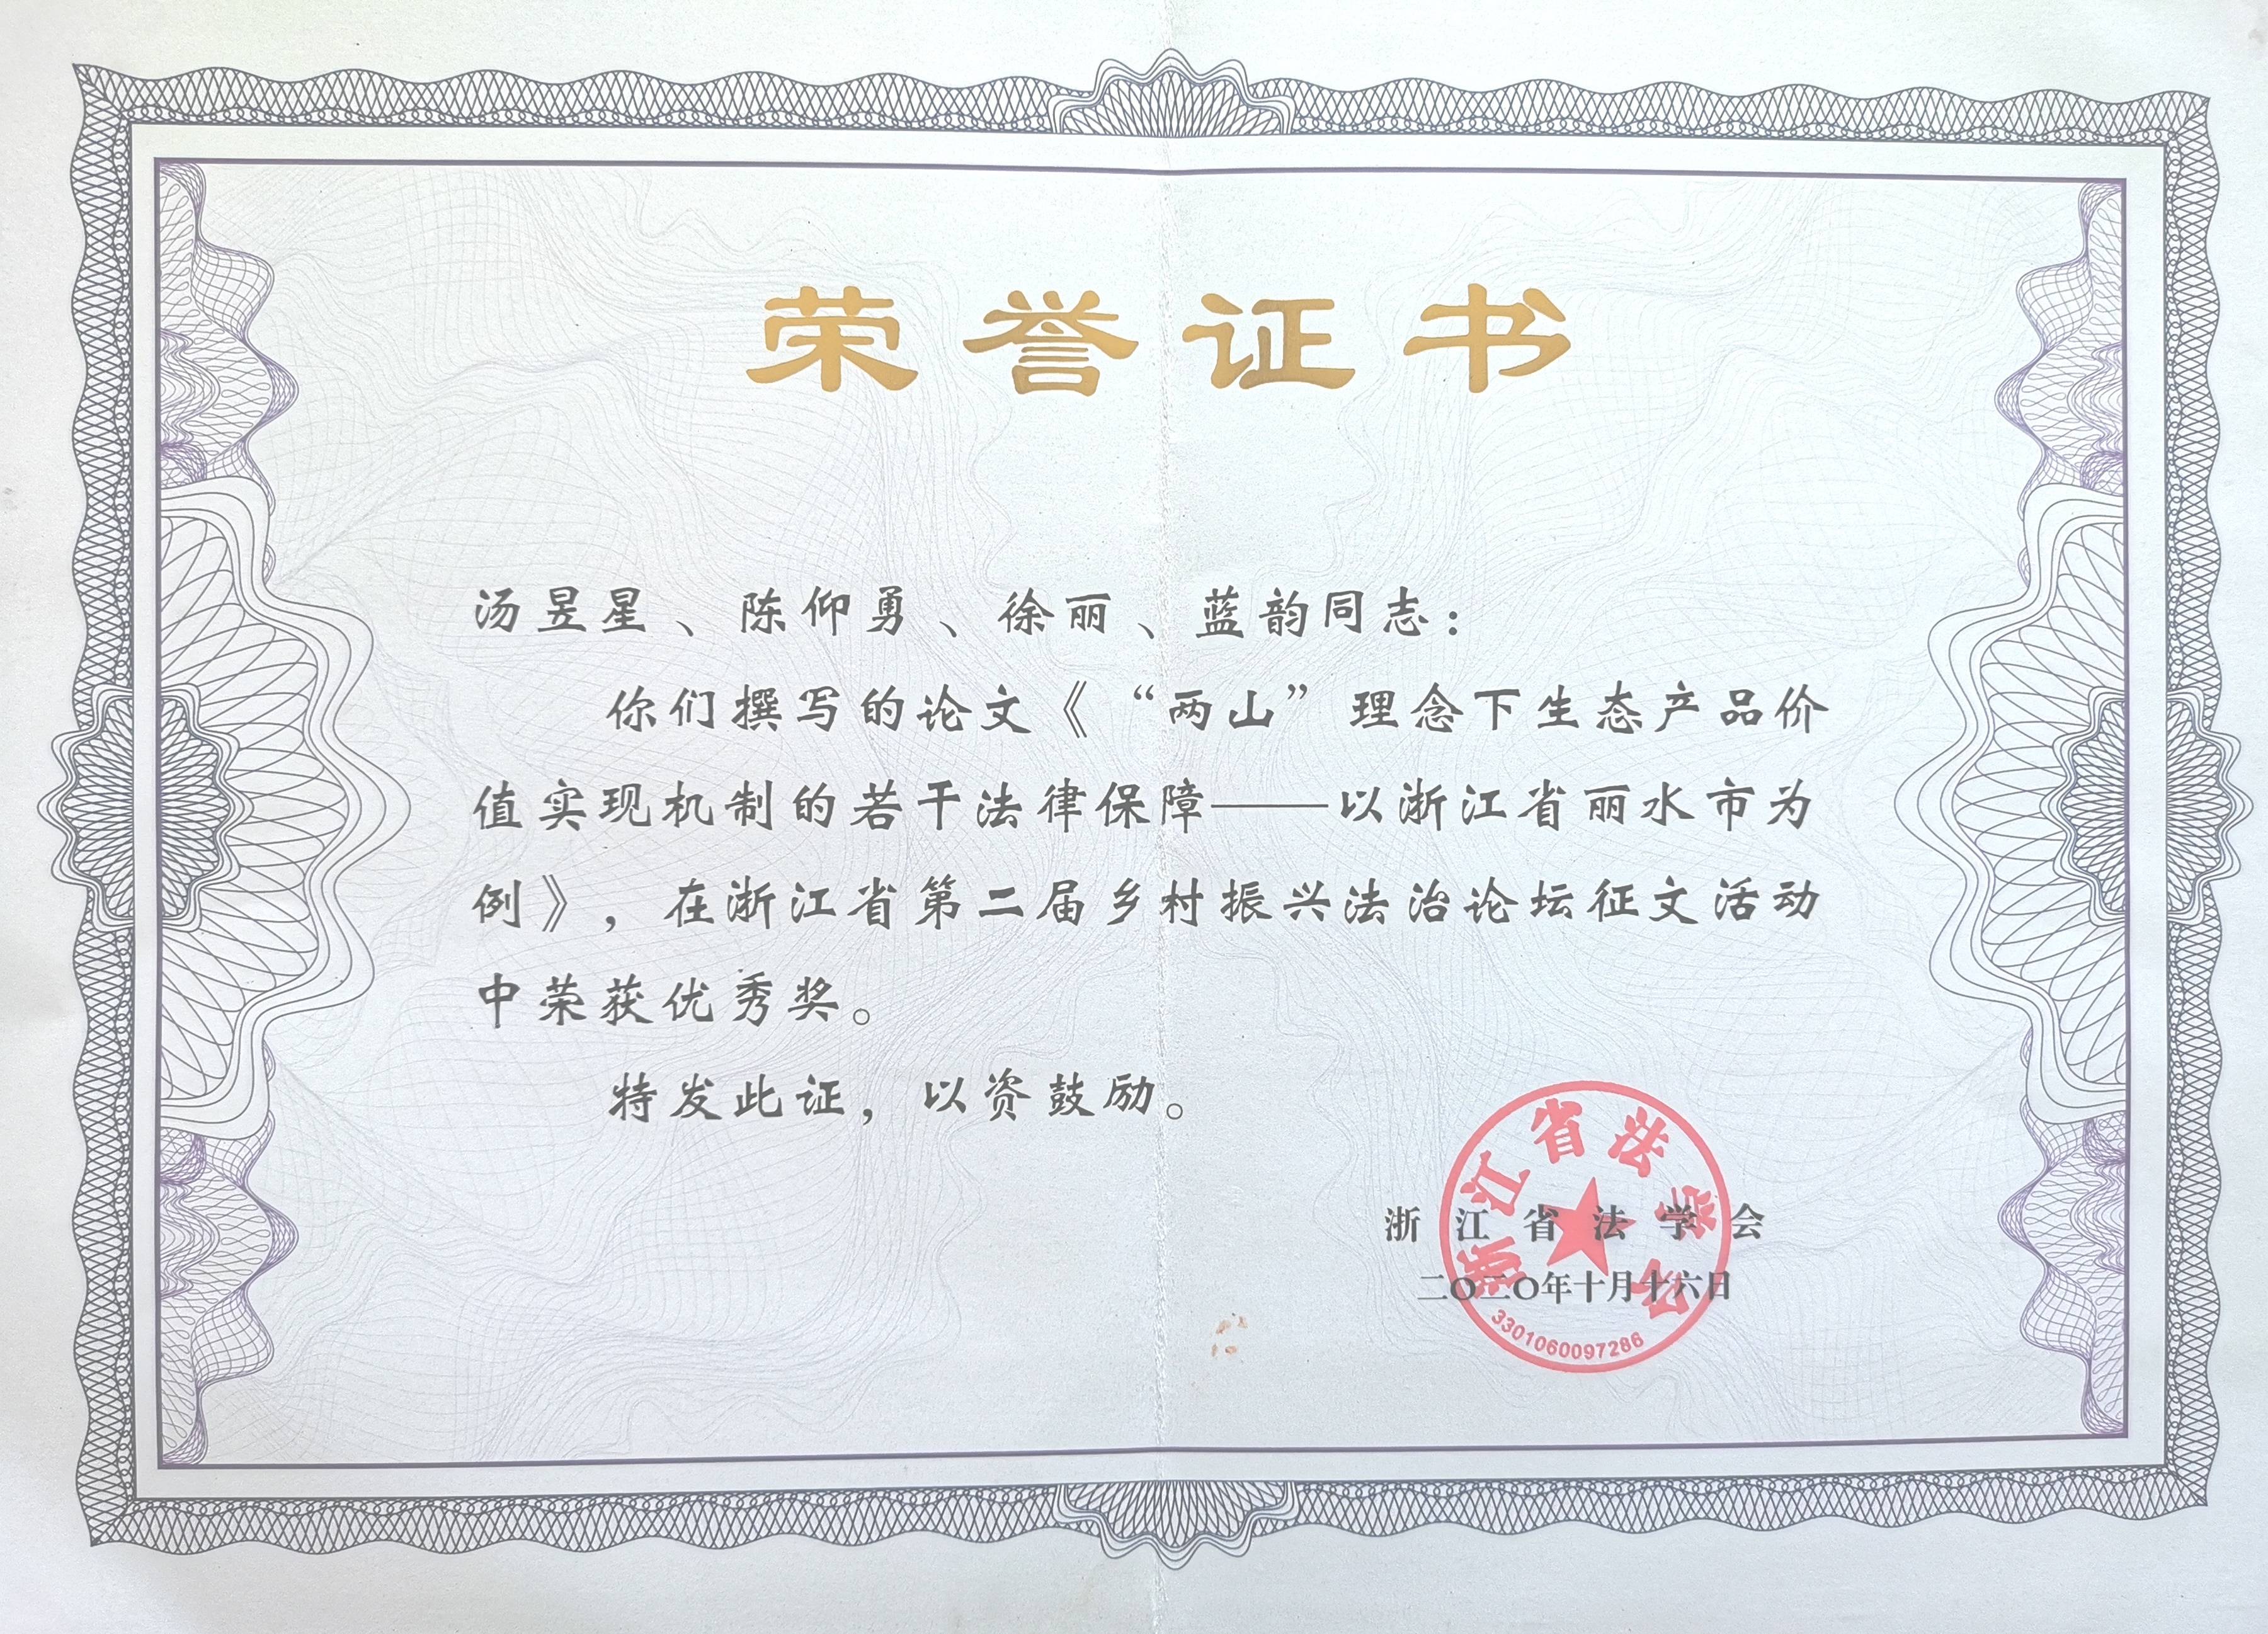 浙江省法学会颁发的获奖荣誉证书丽水市法学会颁发的获奖荣誉证书